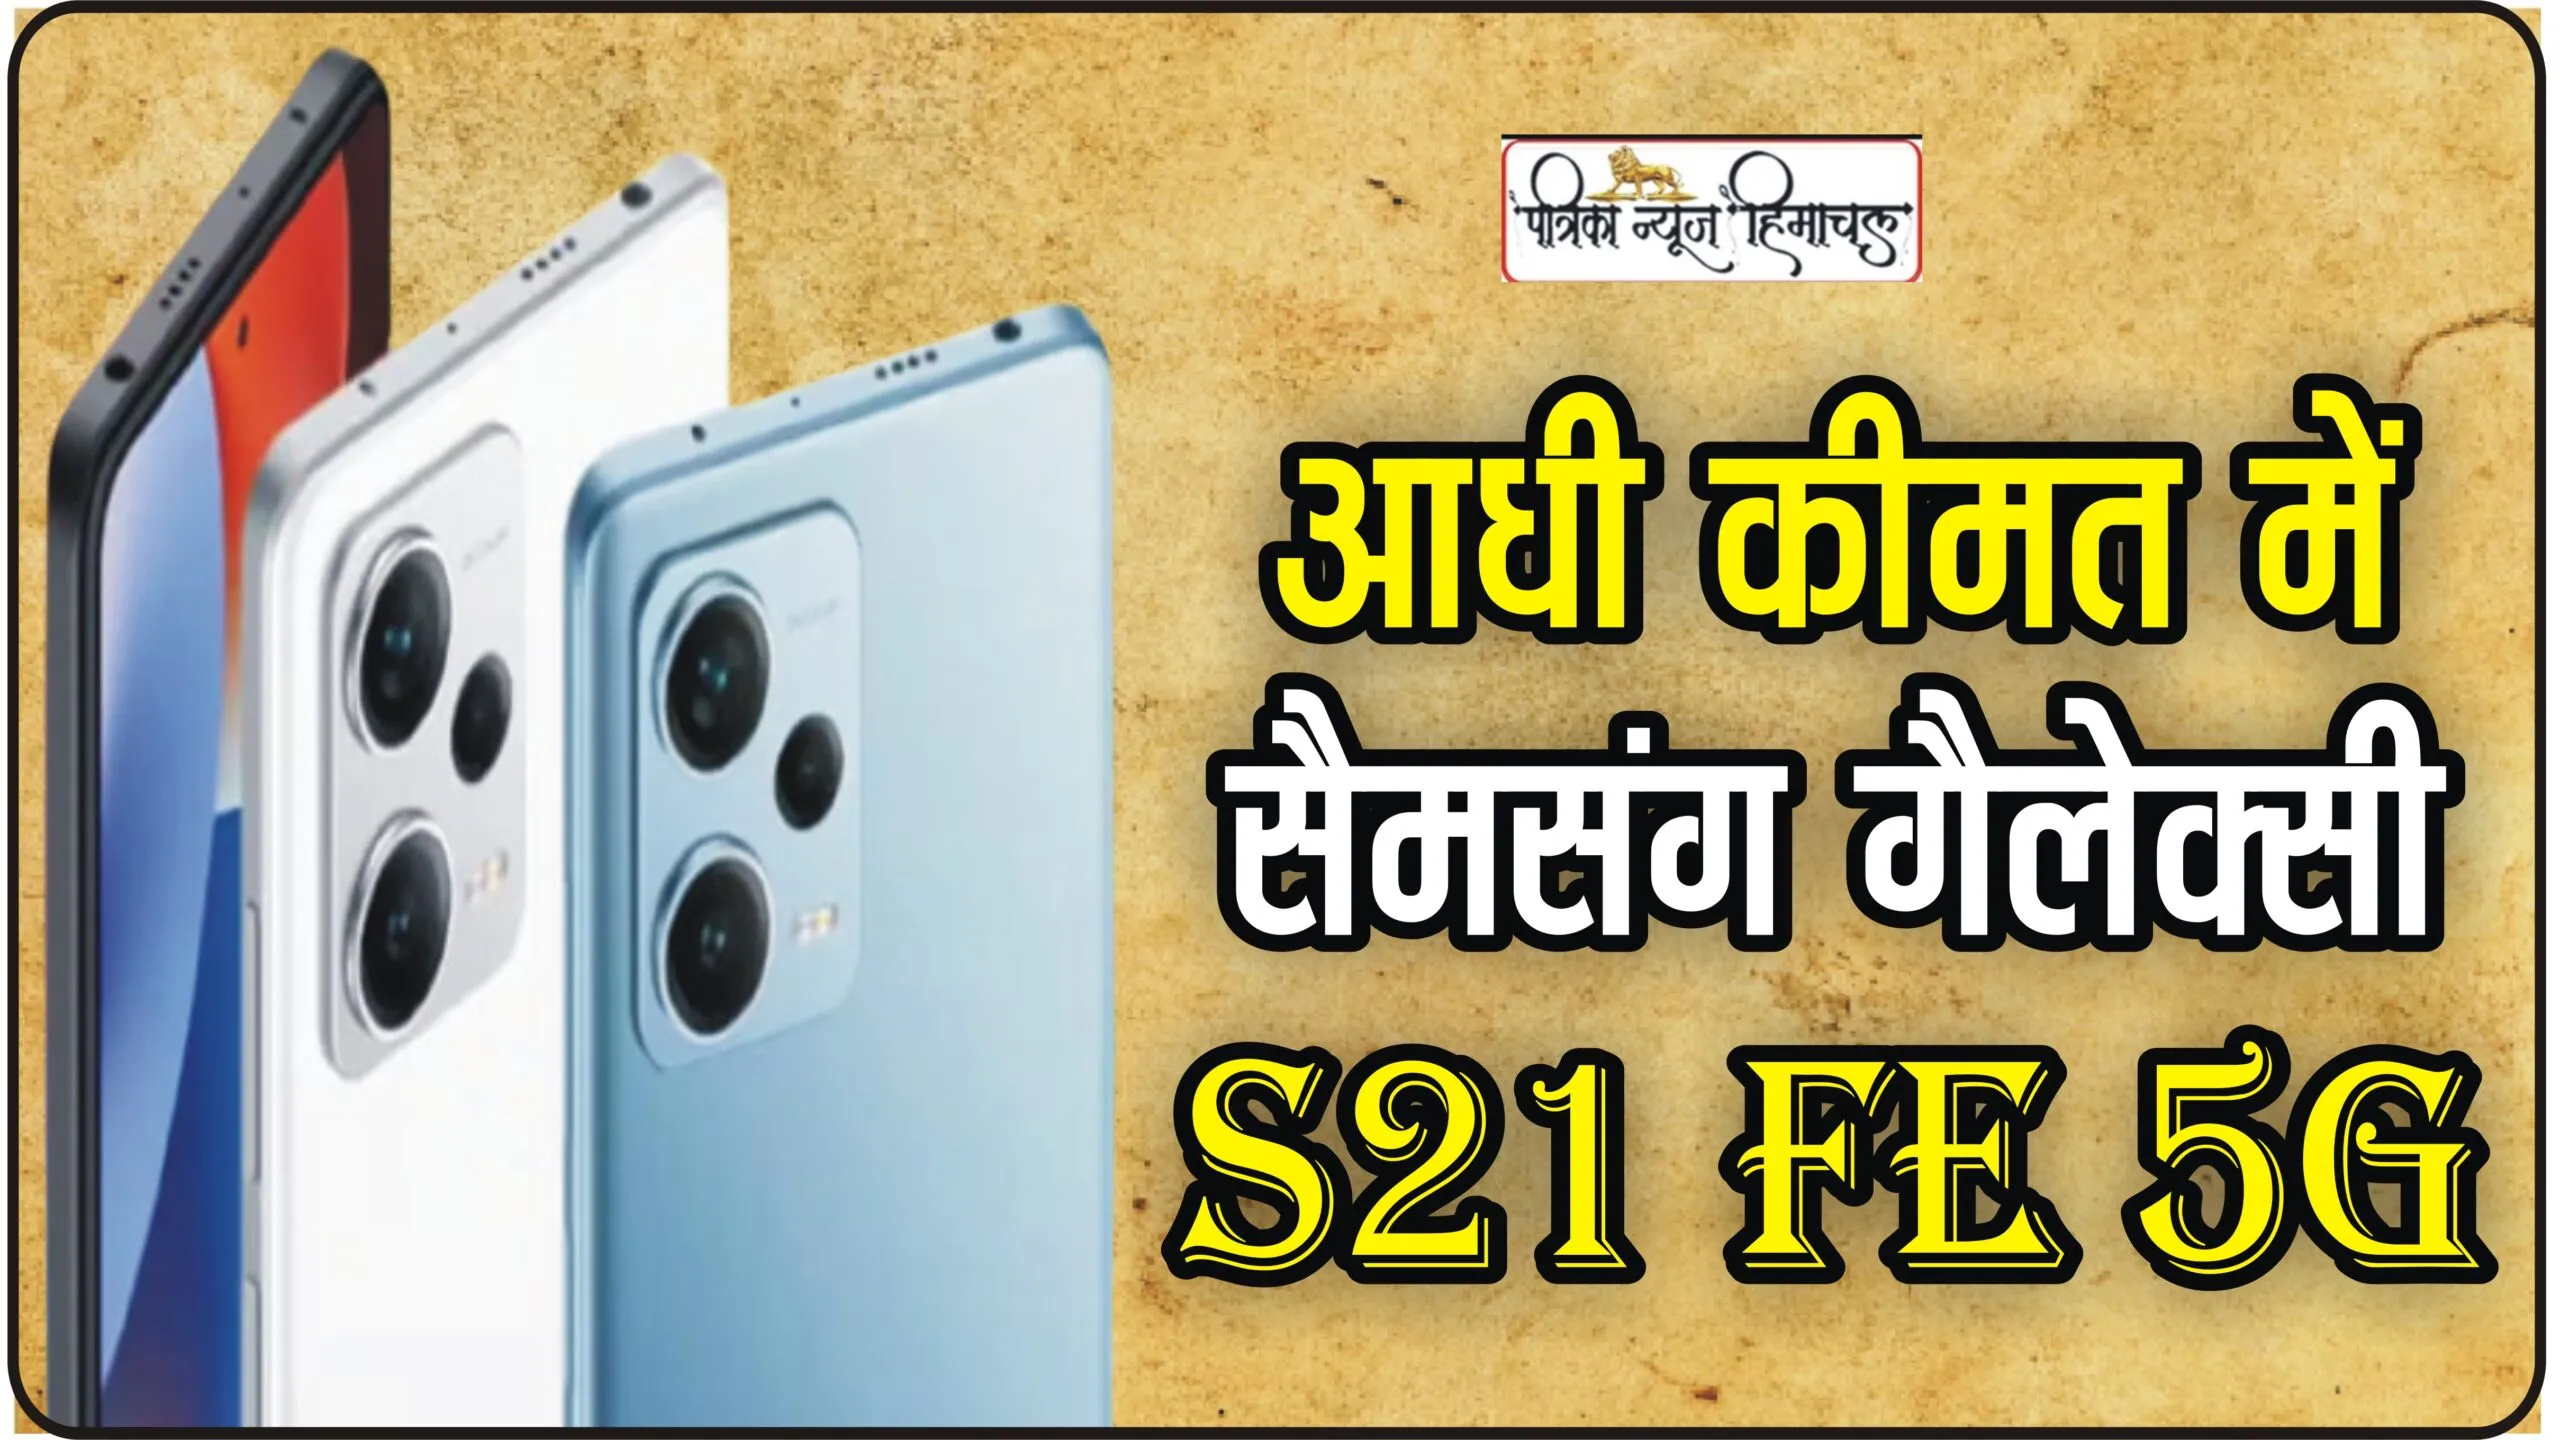 SAMSUNG Galaxy S21 FE 5G || सैमसंग लवर्स की बल्ले-बल्ले, ₹9899 में मिल रहा 75 हजार का प्रीमियम 5G Samsung फोन, यहां से खरीदें